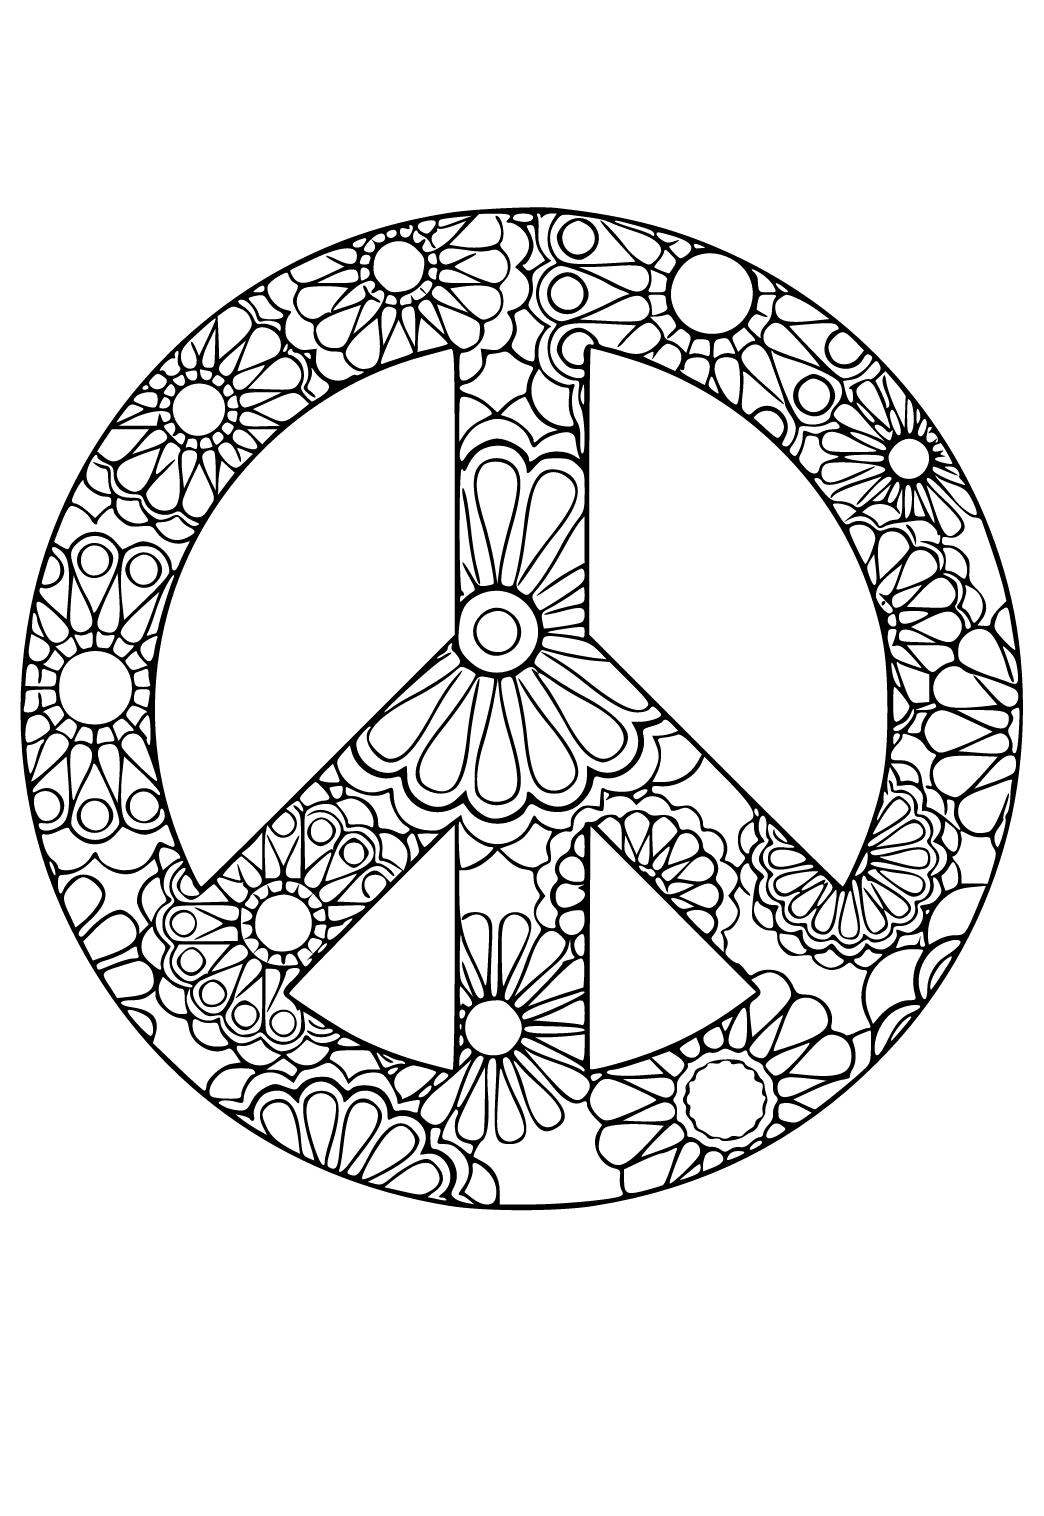 Σήμα Ειρήνης